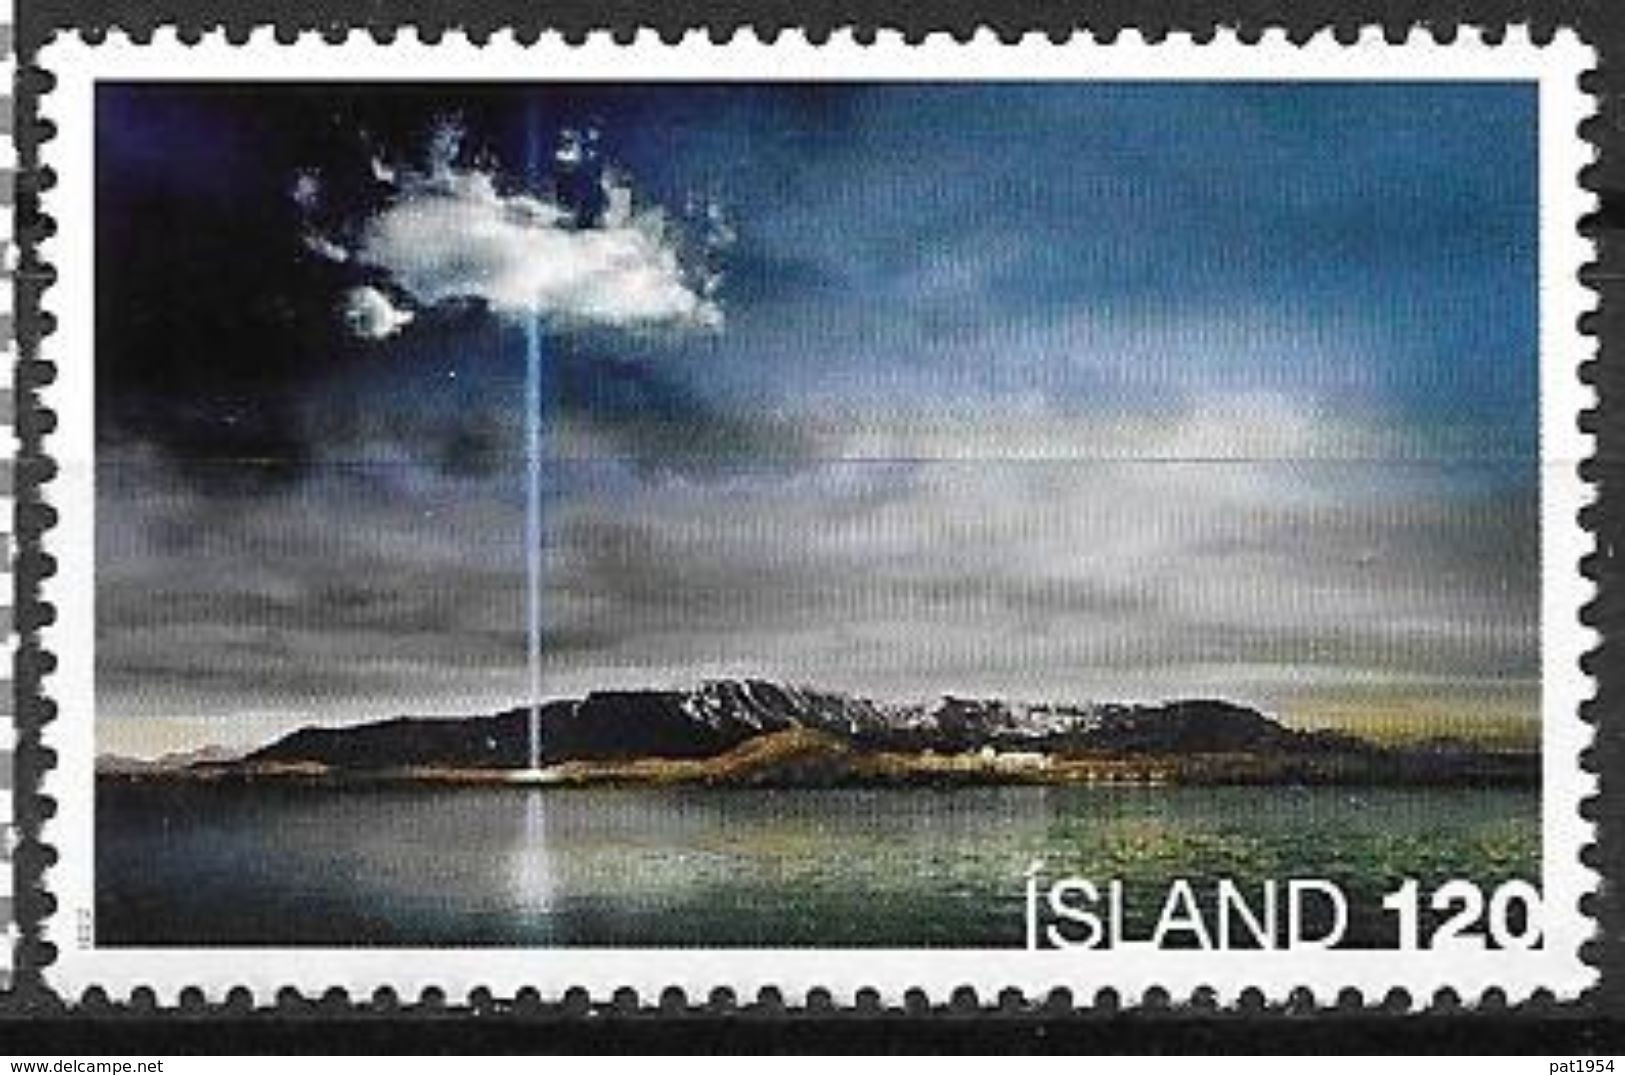 Islande 2008 N°1142 Neuf** Colonne De La Paix - Neufs